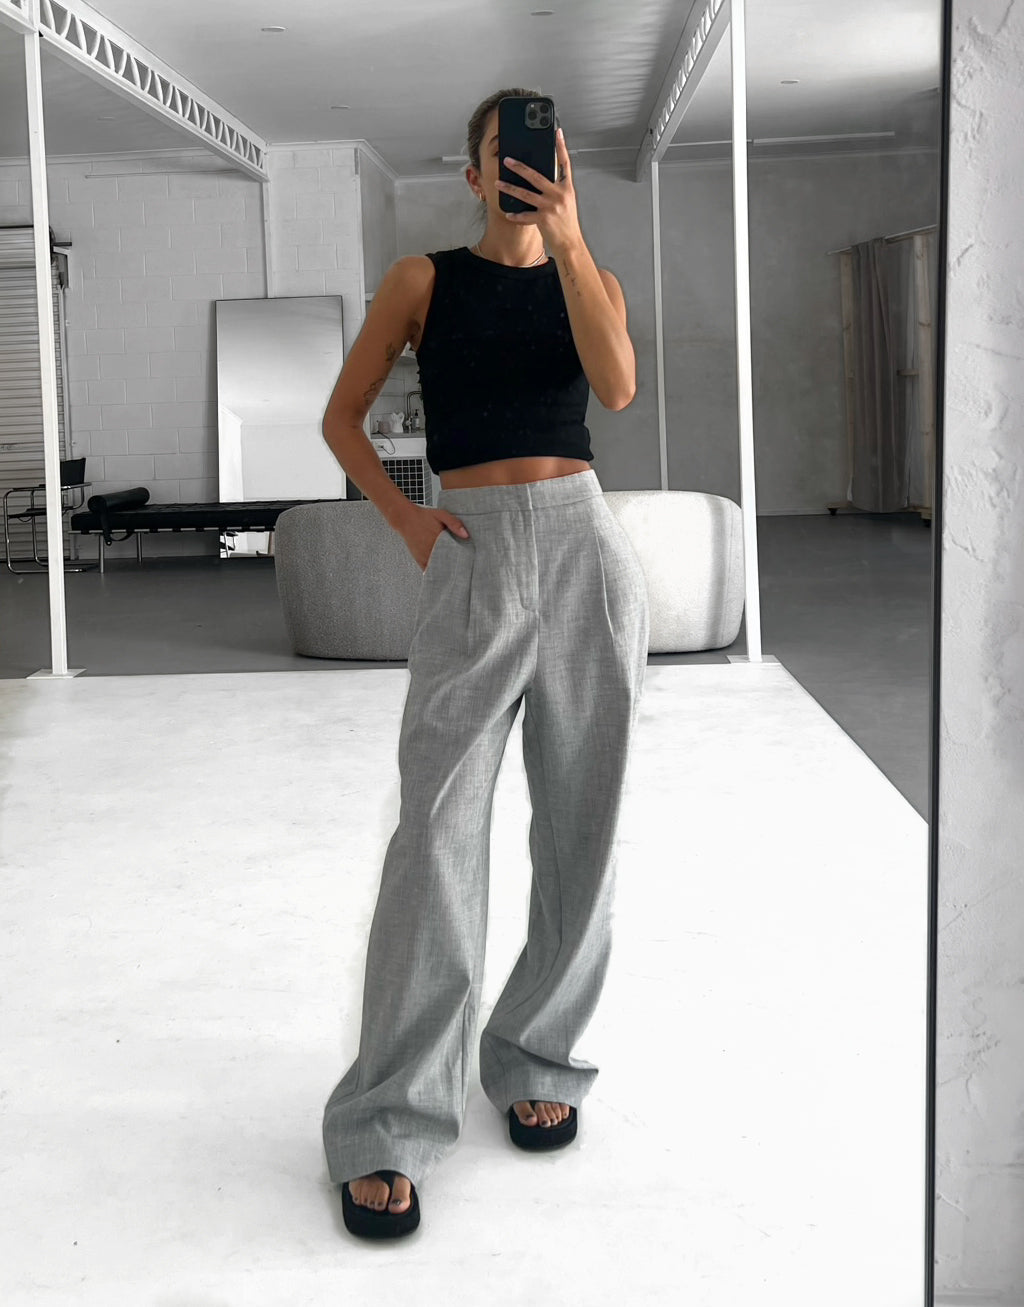 Zara + Asymmetric Wide Leg Pants